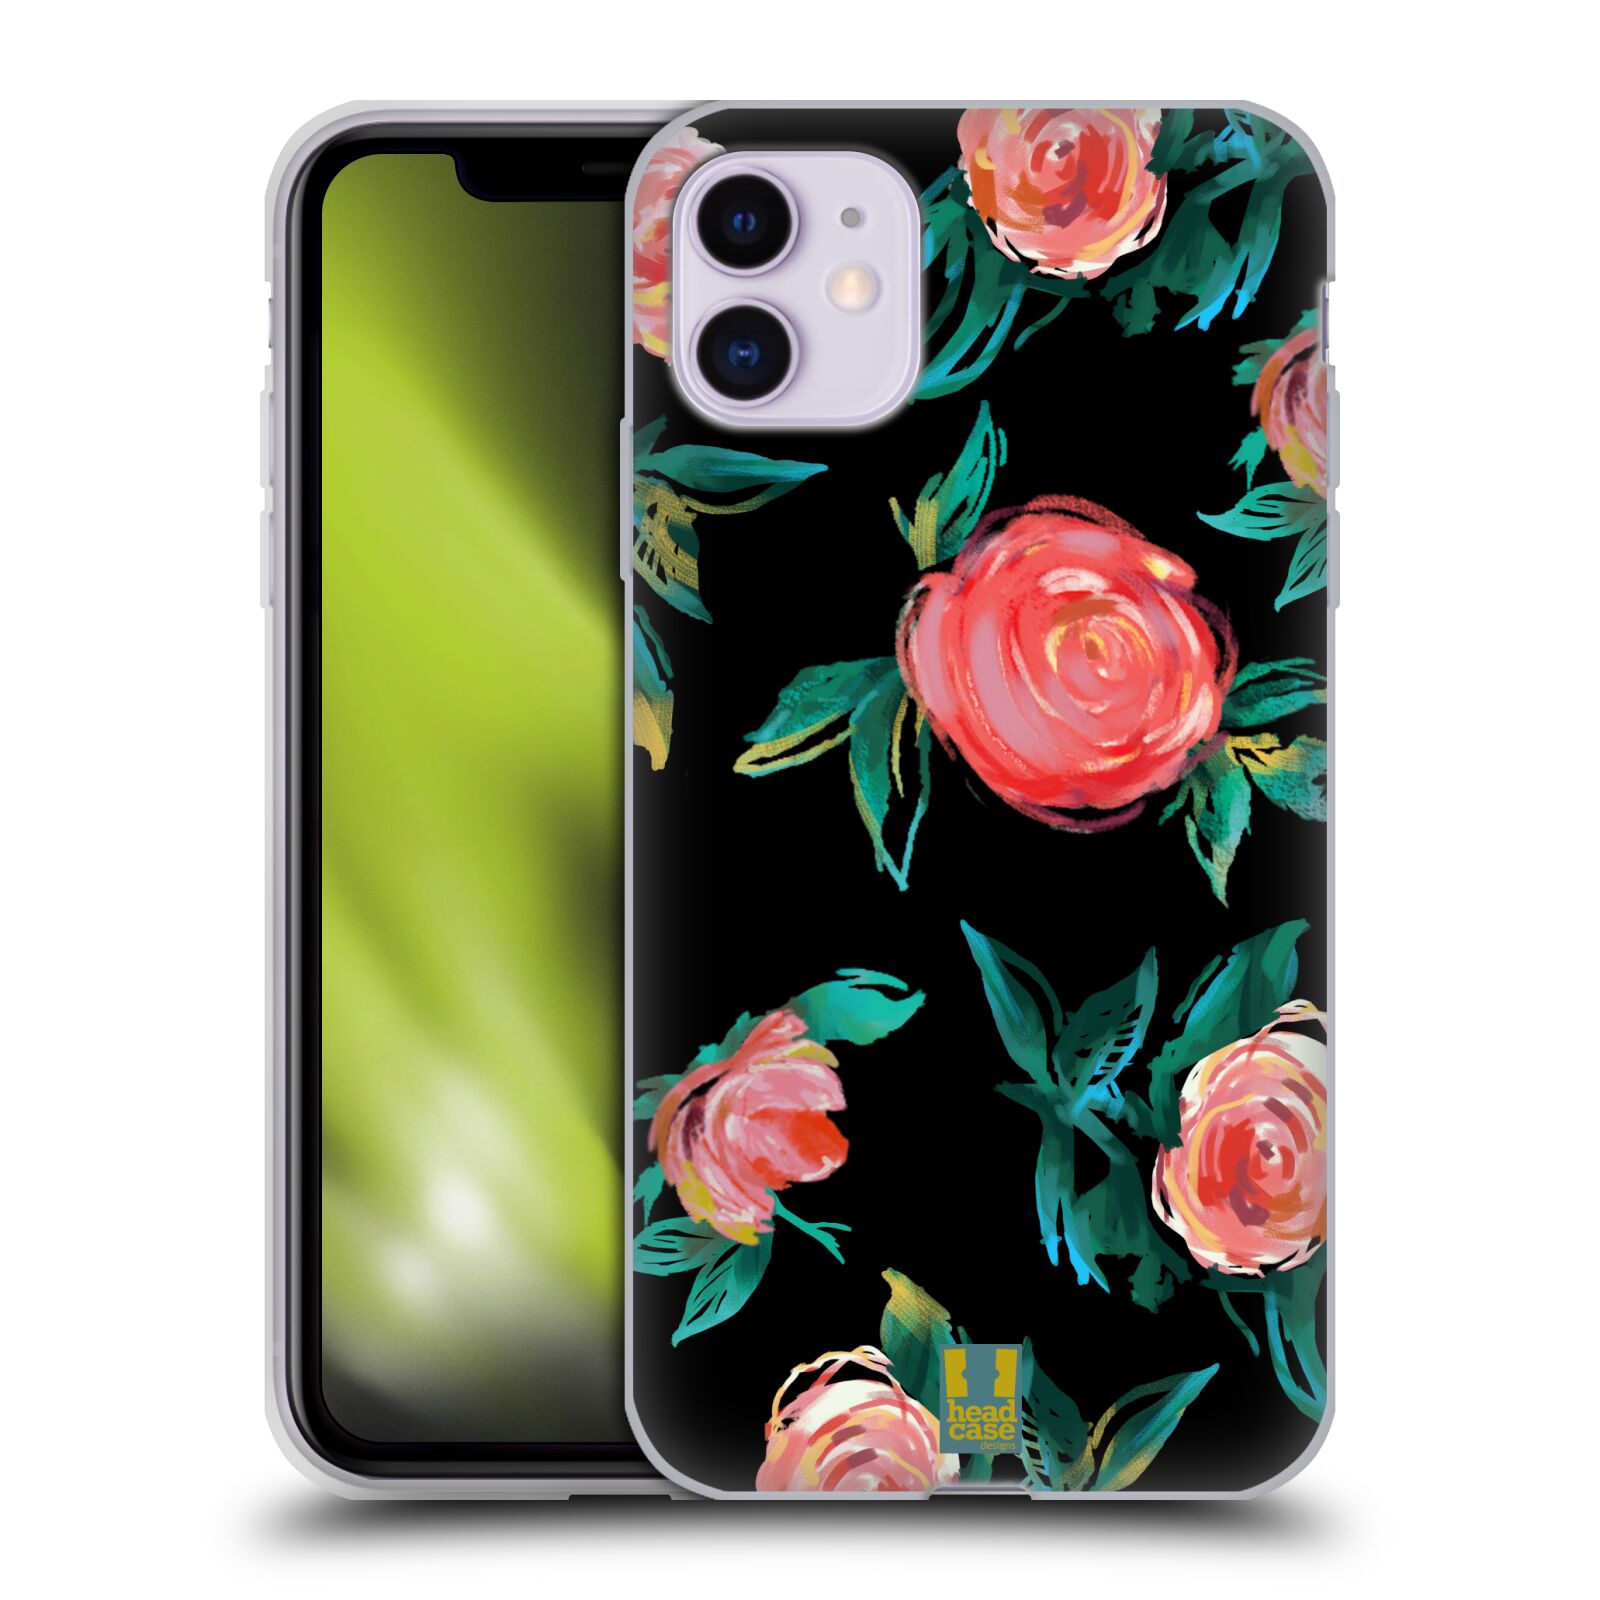 Silikonový obal na mobil Apple Iphone 11 - HEAD CASE - Květy - růže na černém pozadí